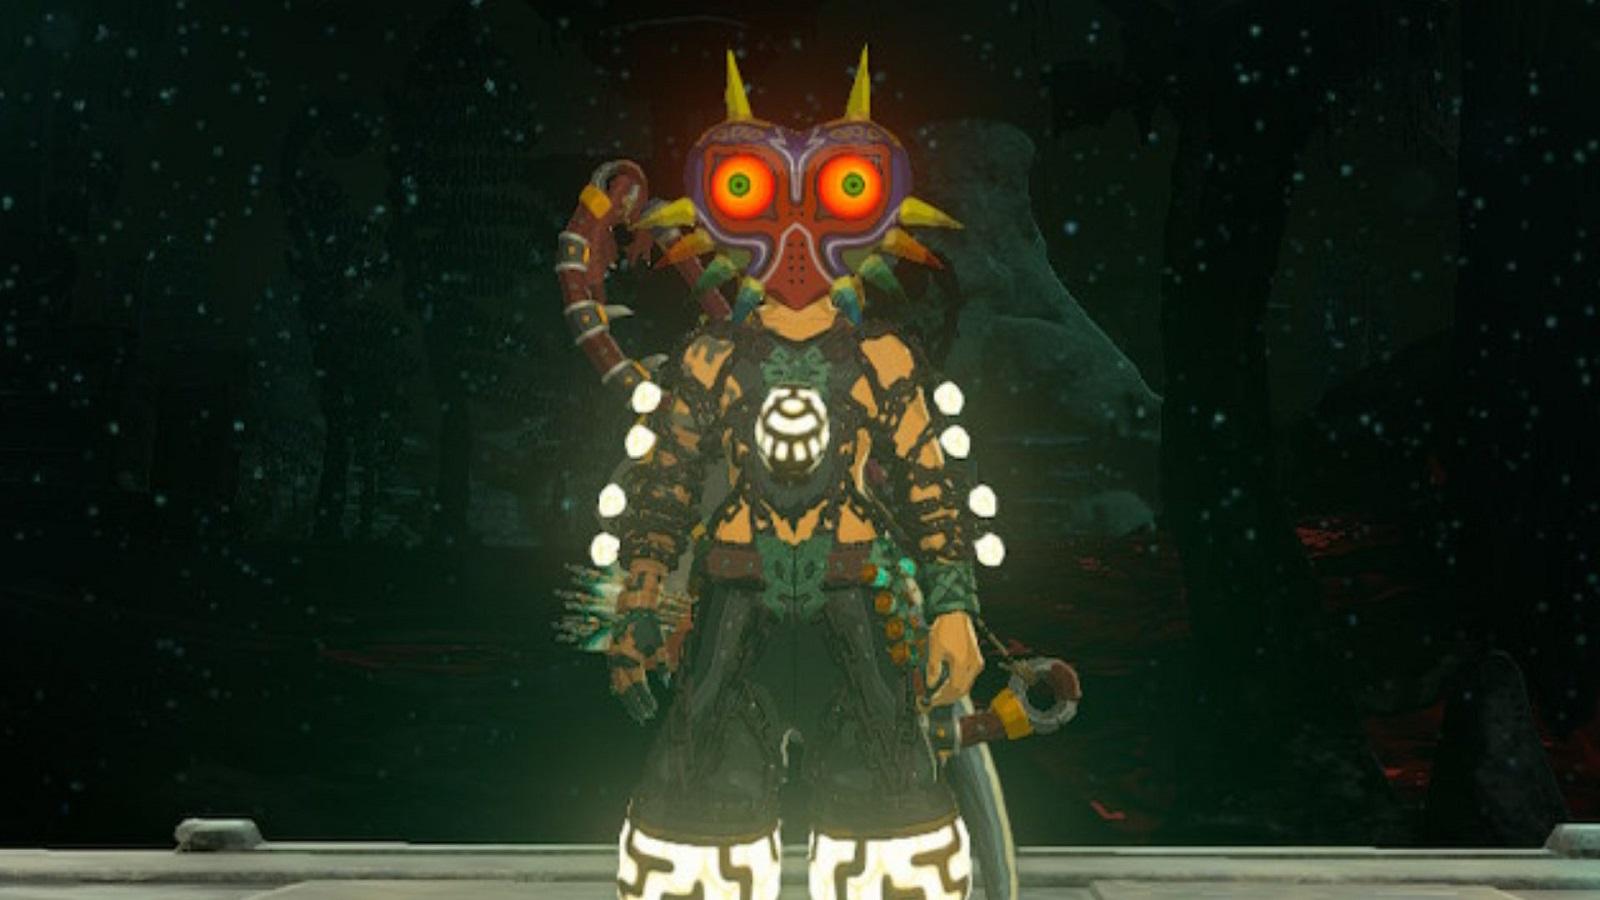 Link wearing Majora's Mask